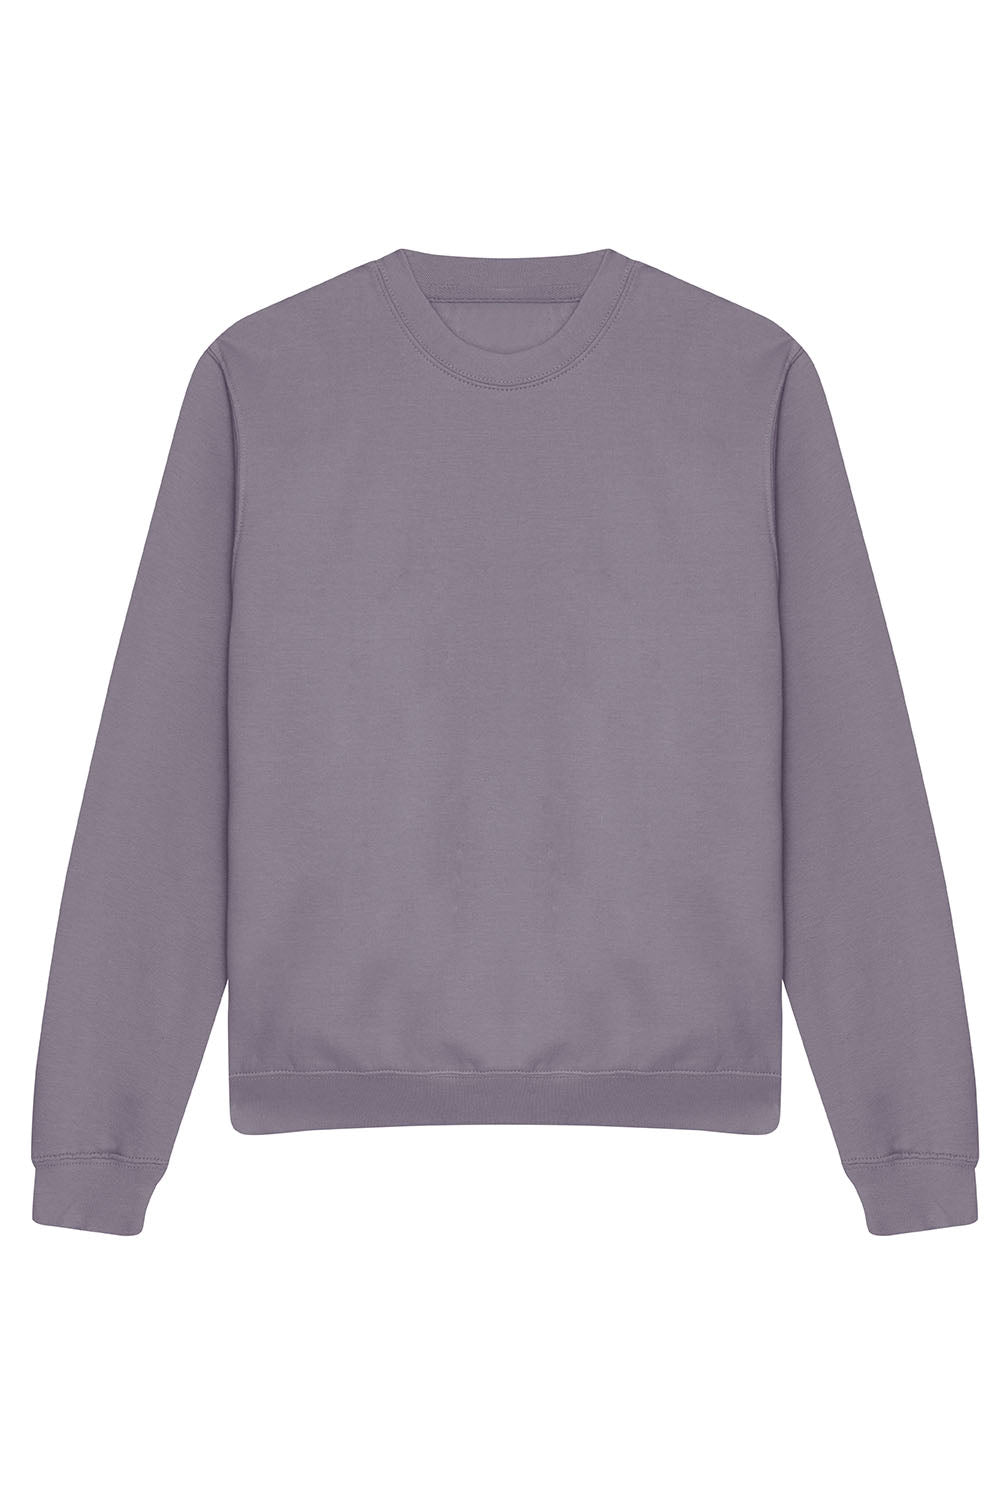 Plain Sweatshirt In Dusty Lilac (Single).